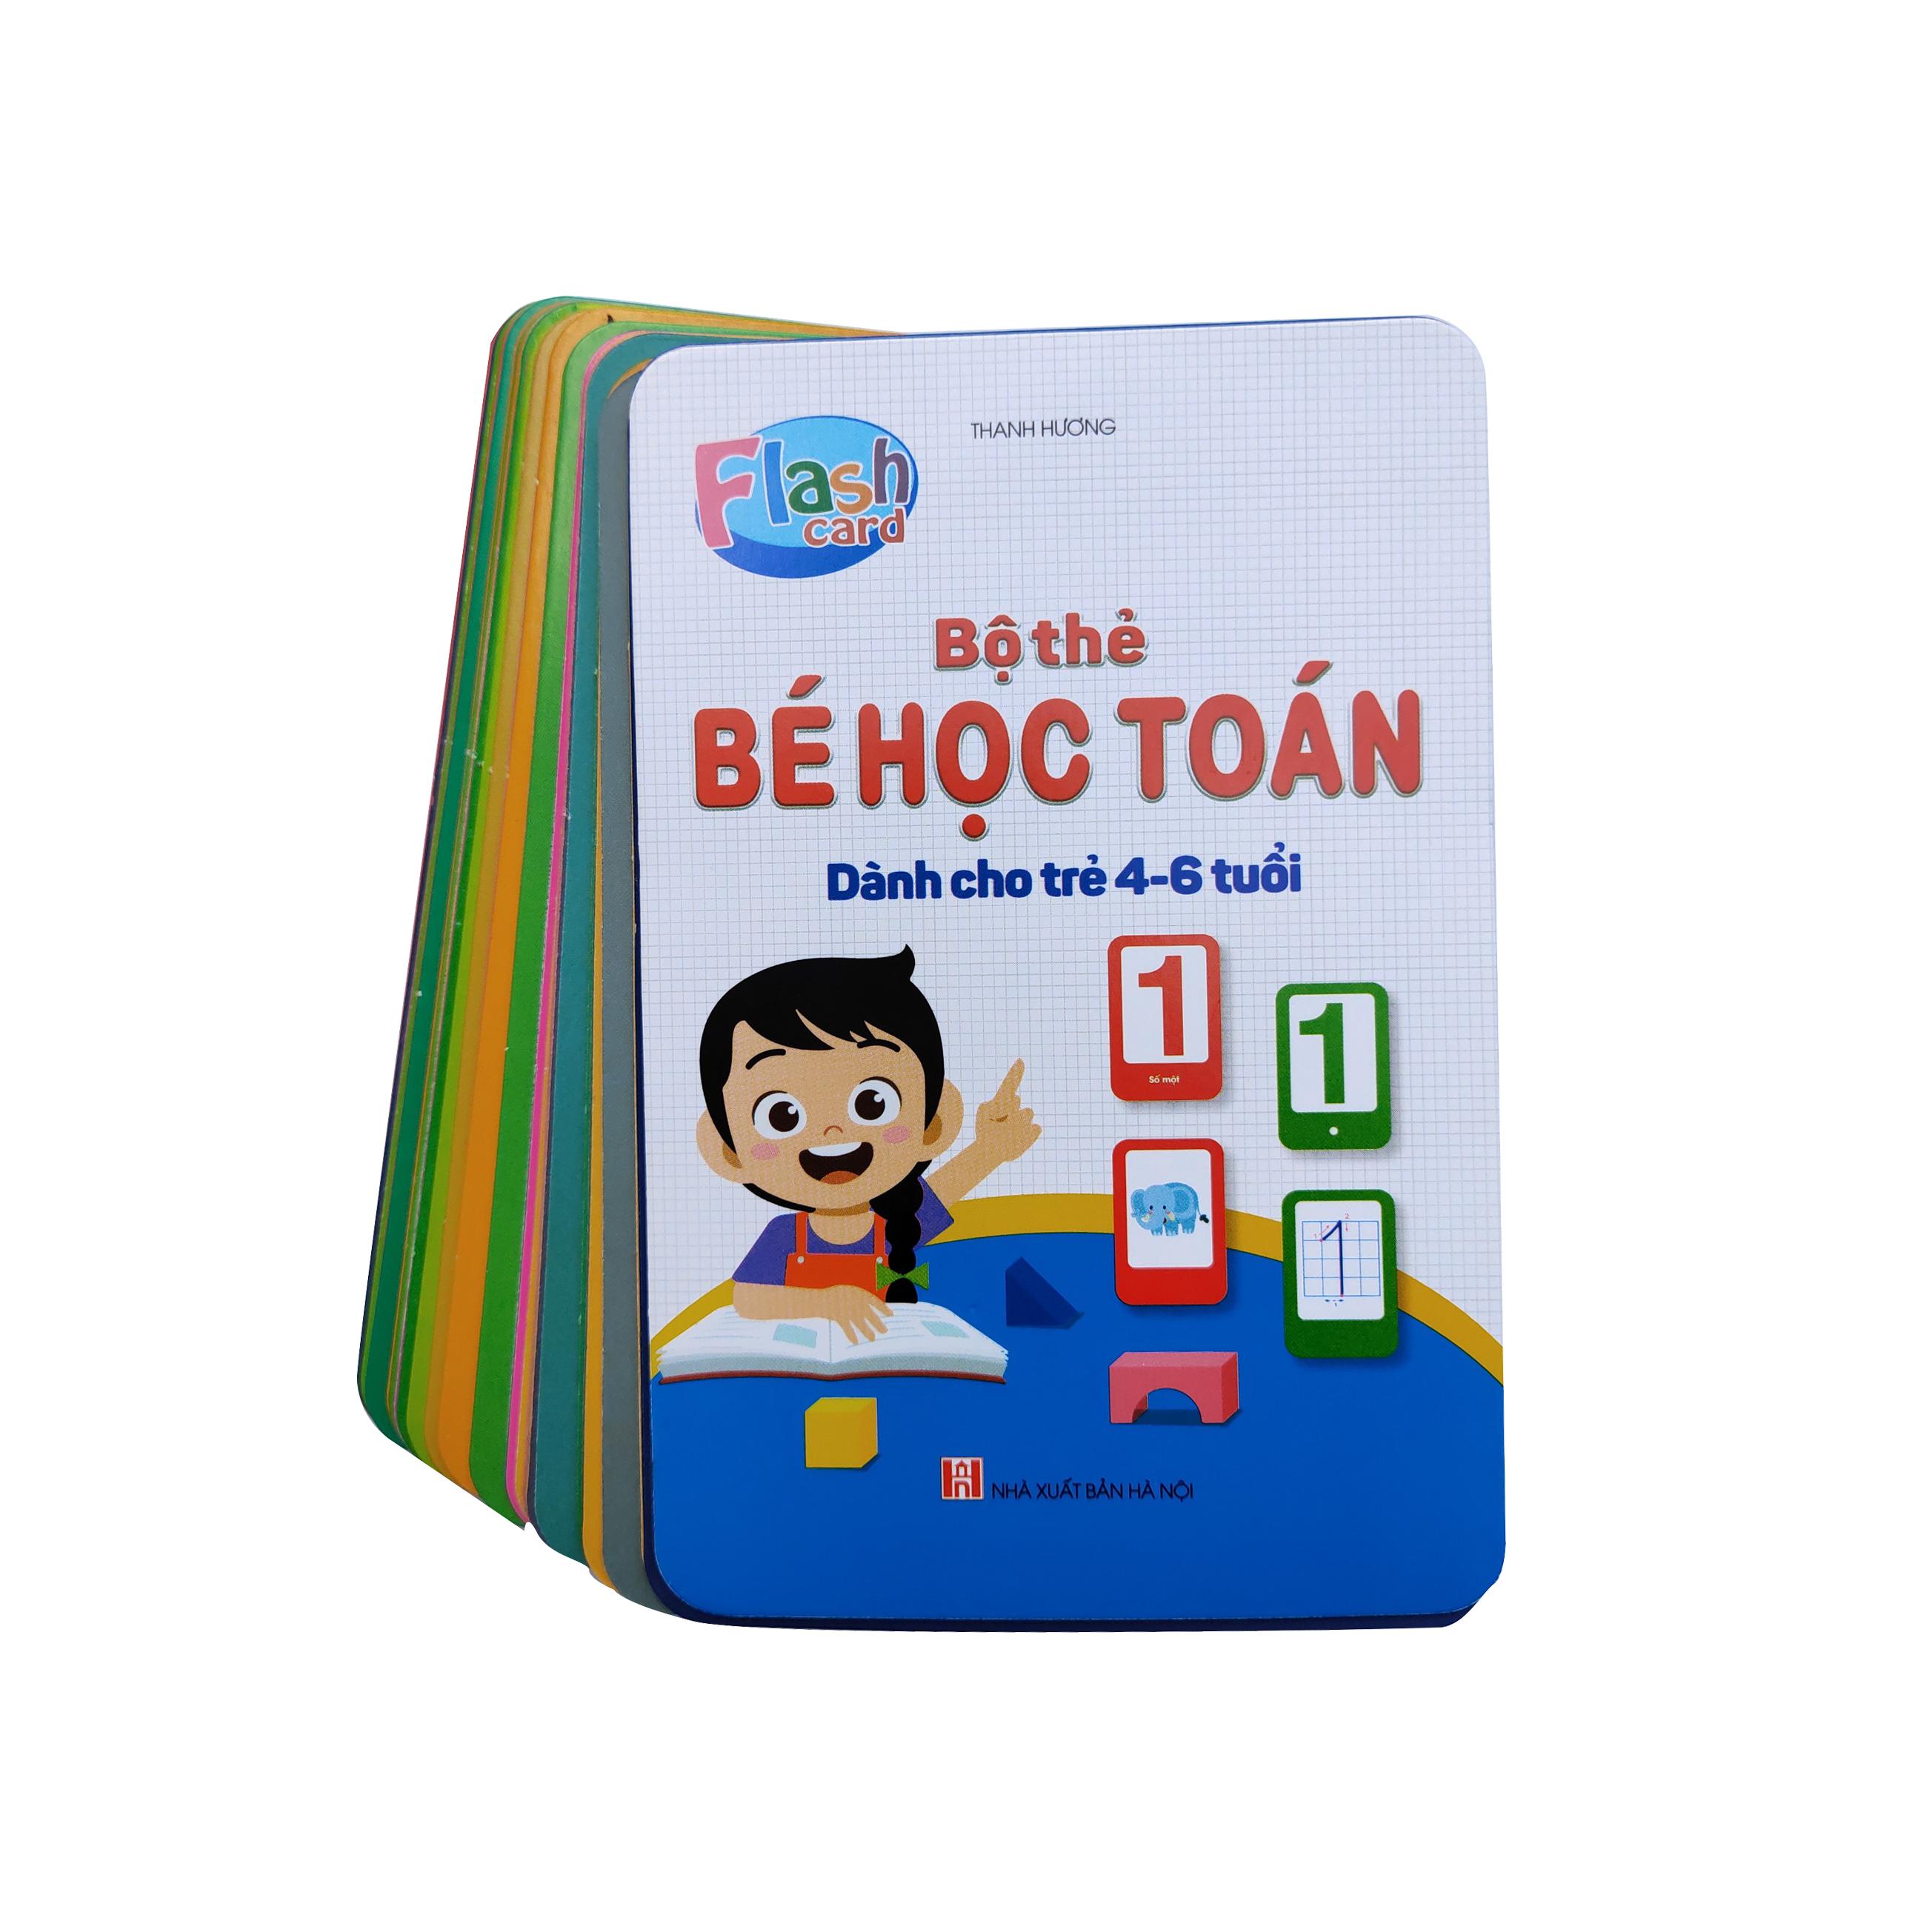 Thẻ Flashcard Bé Học Toán Tập Đếm Và Viết Số Cho Trẻ 4 - 6 Tuổi Kèm Thẻ Học Chữ